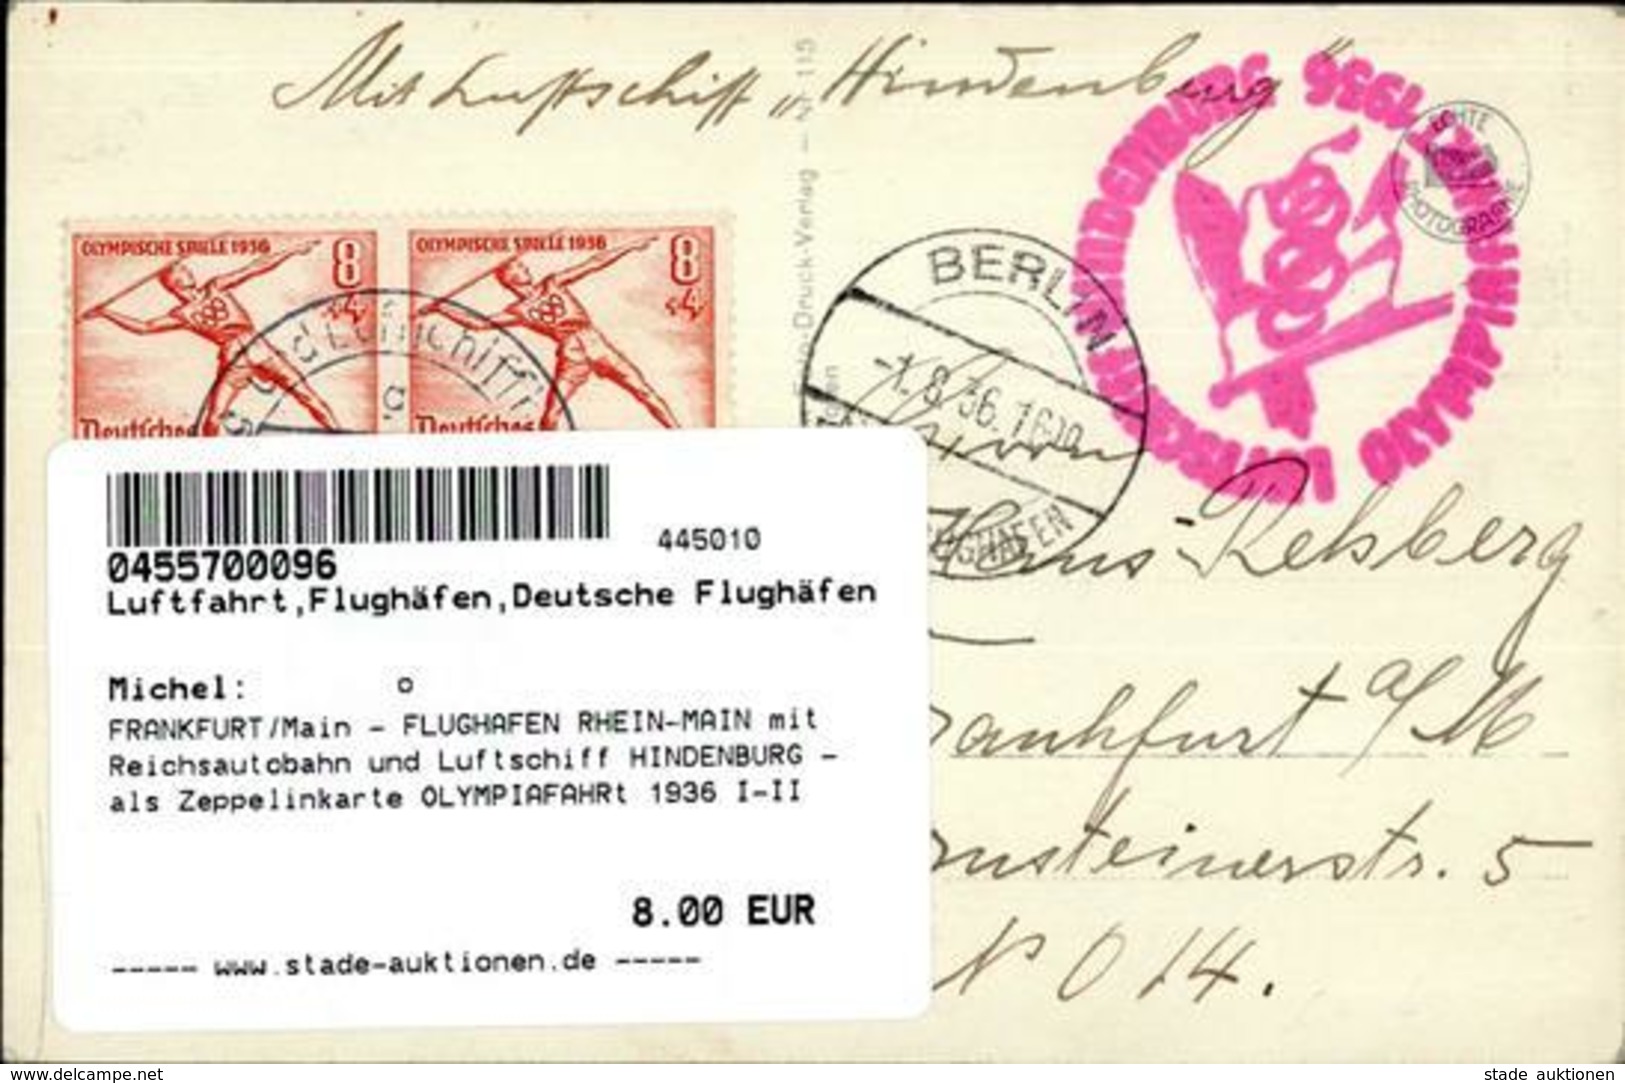 FRANKFURT/Main - FLUGHAFEN RHEIN-MAIN Mit Reichsautobahn Und Luftschiff HINDENBURG - Als Zeppelinkarte OLYMPIAFAHRt 1936 - War 1914-18